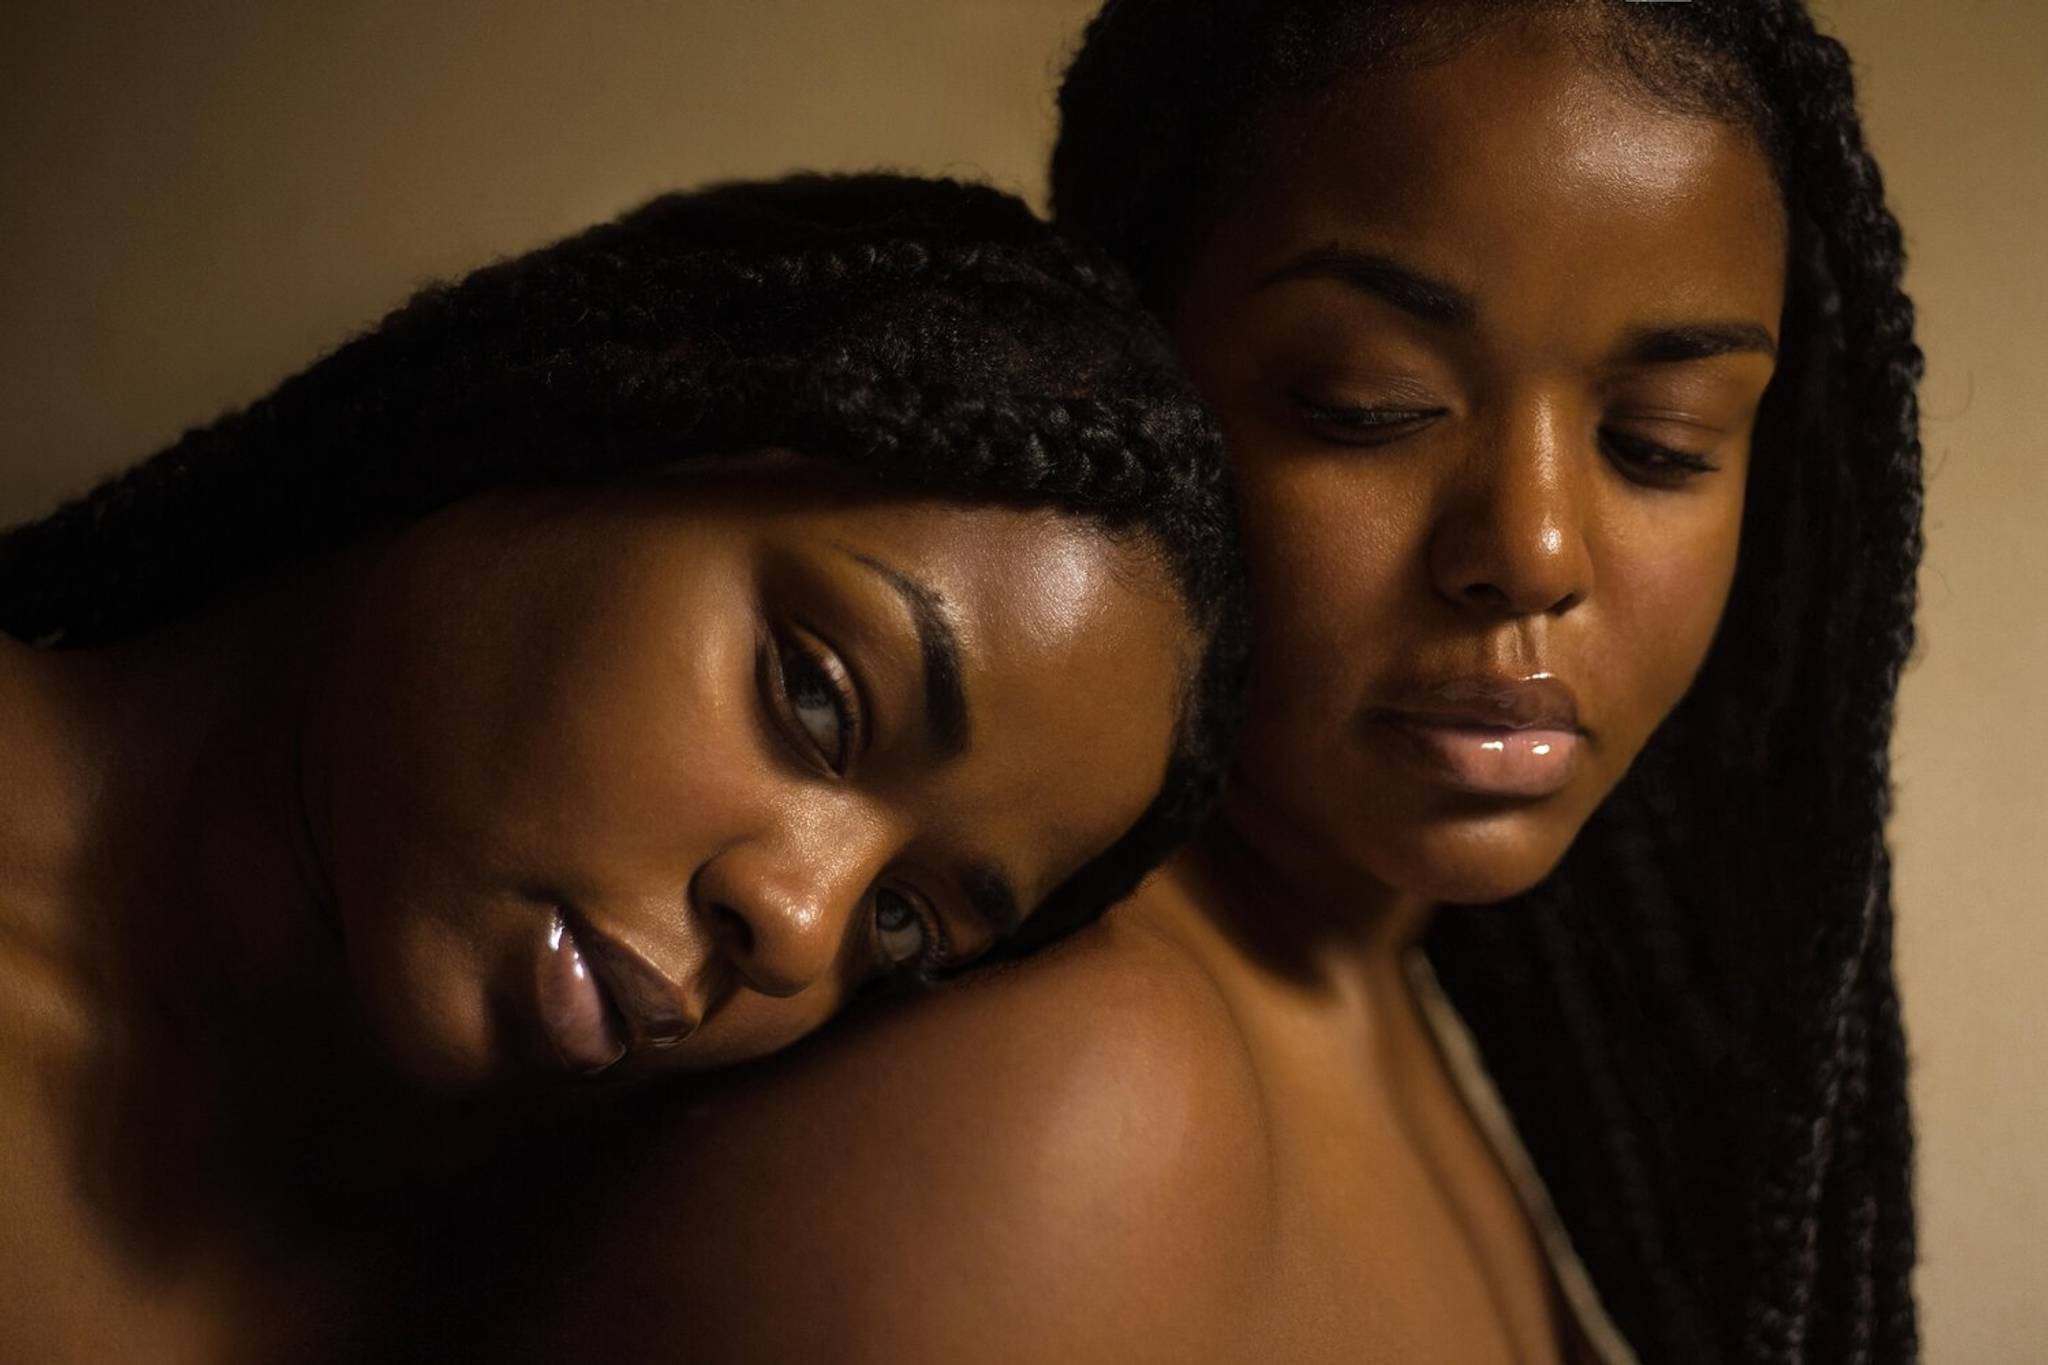 Black Girl’s Healing House: wellness for Black women